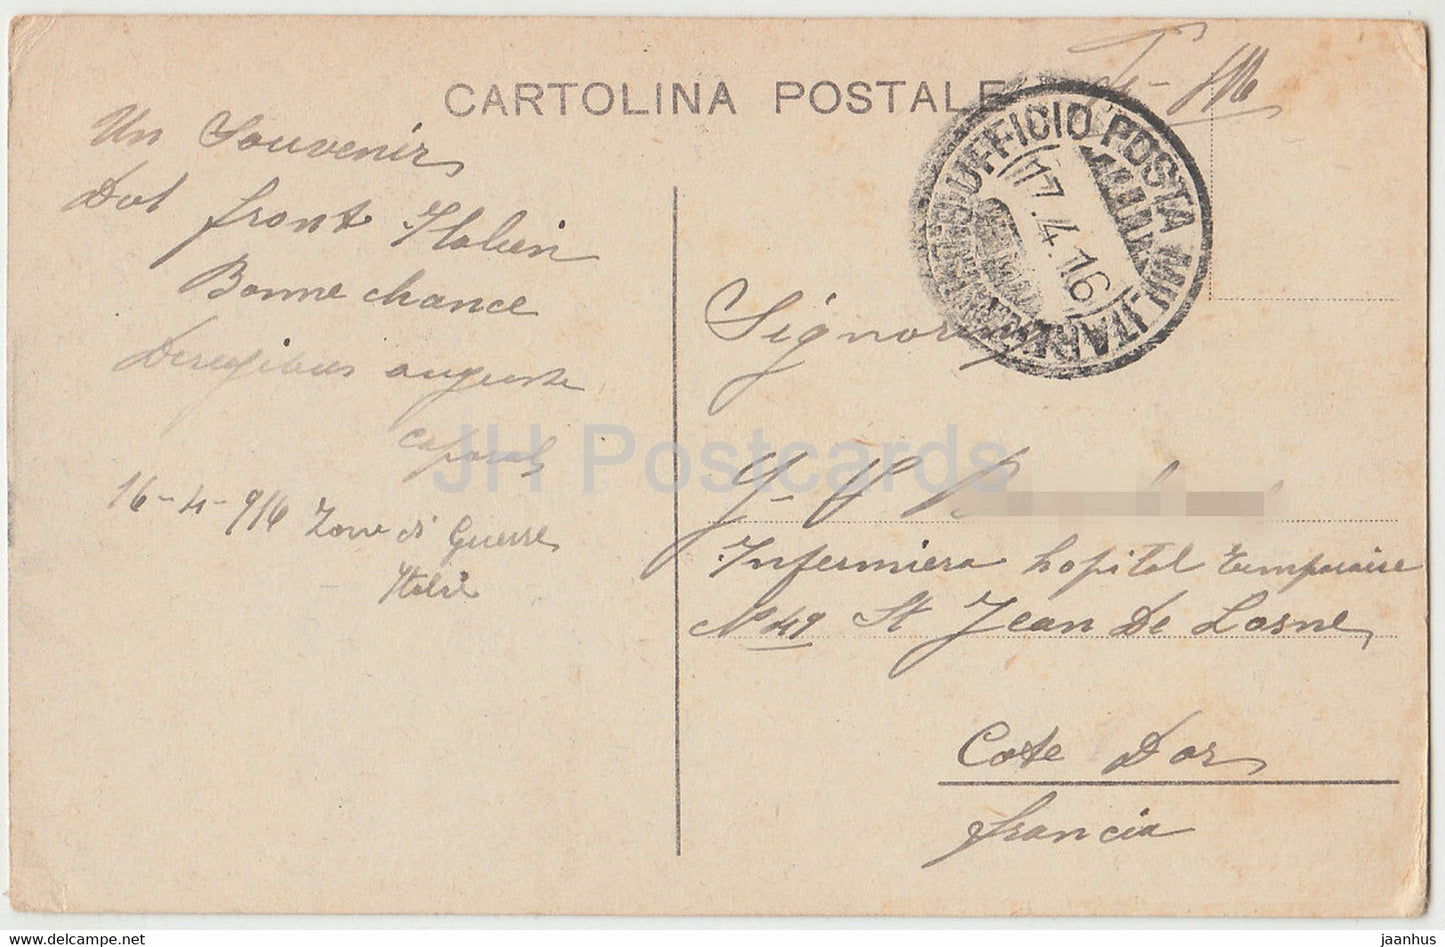 Fior dell'Alpe il Ciclamiino - rote Blumen - alte Postkarte - 1916 - Italien - gebraucht